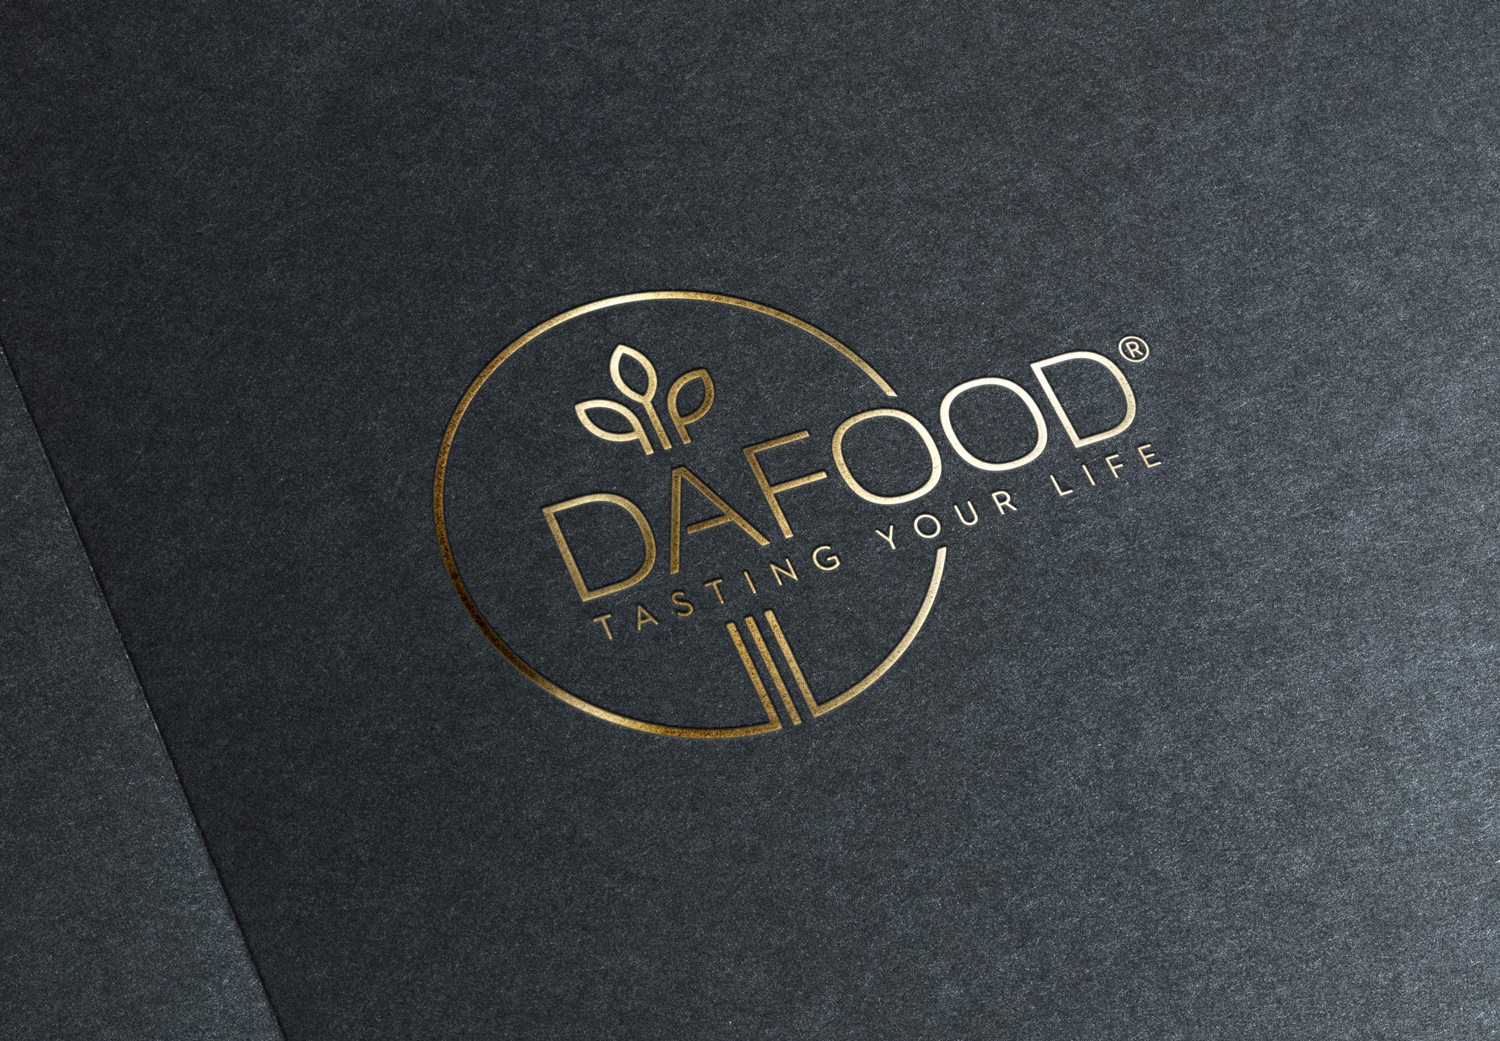 Dafood-3